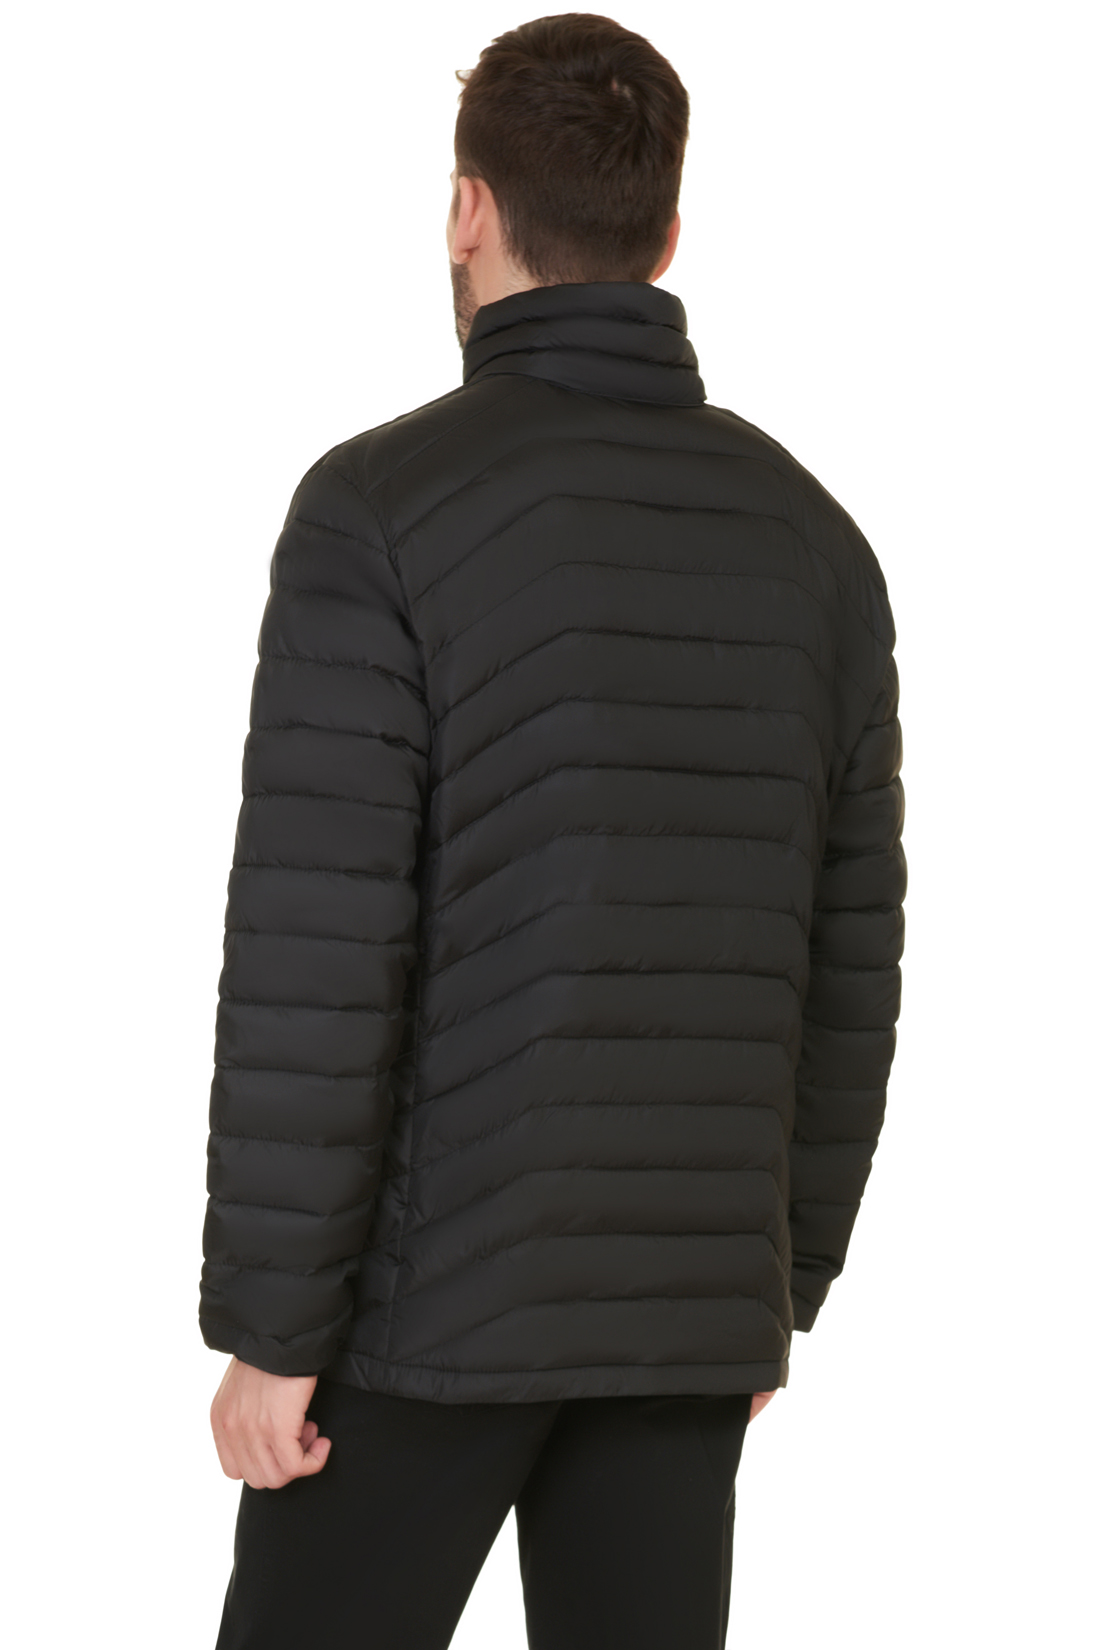 Куртка с непроницаемыми молниями (арт. baon B537547), размер L, цвет черный Куртка с непроницаемыми молниями (арт. baon B537547) - фото 2